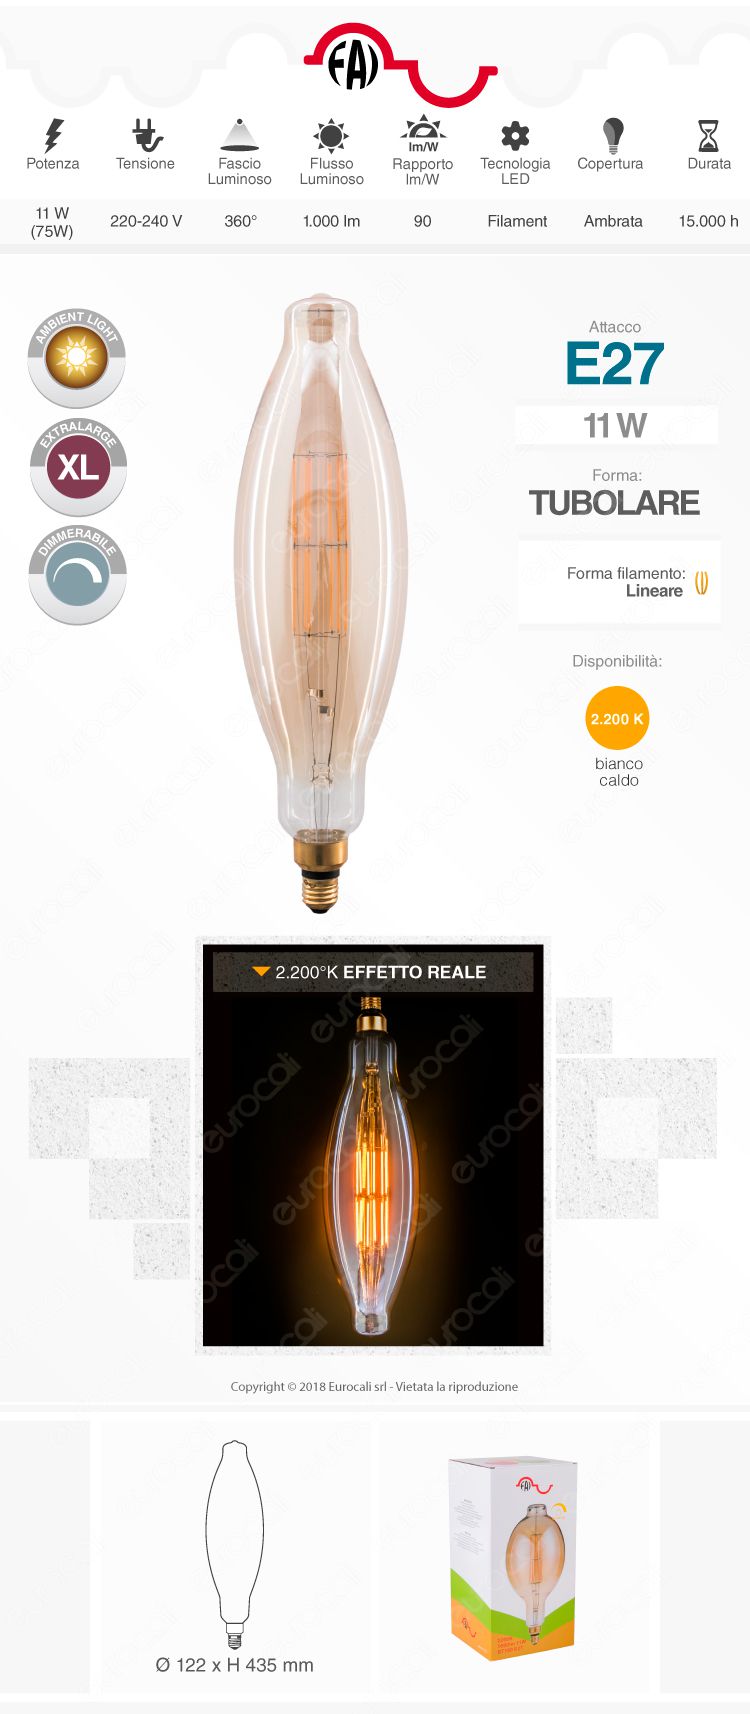 FAI Lampada LED Vintage XL E27 11W Tubolare Filamento Ambrata Dimmerabile